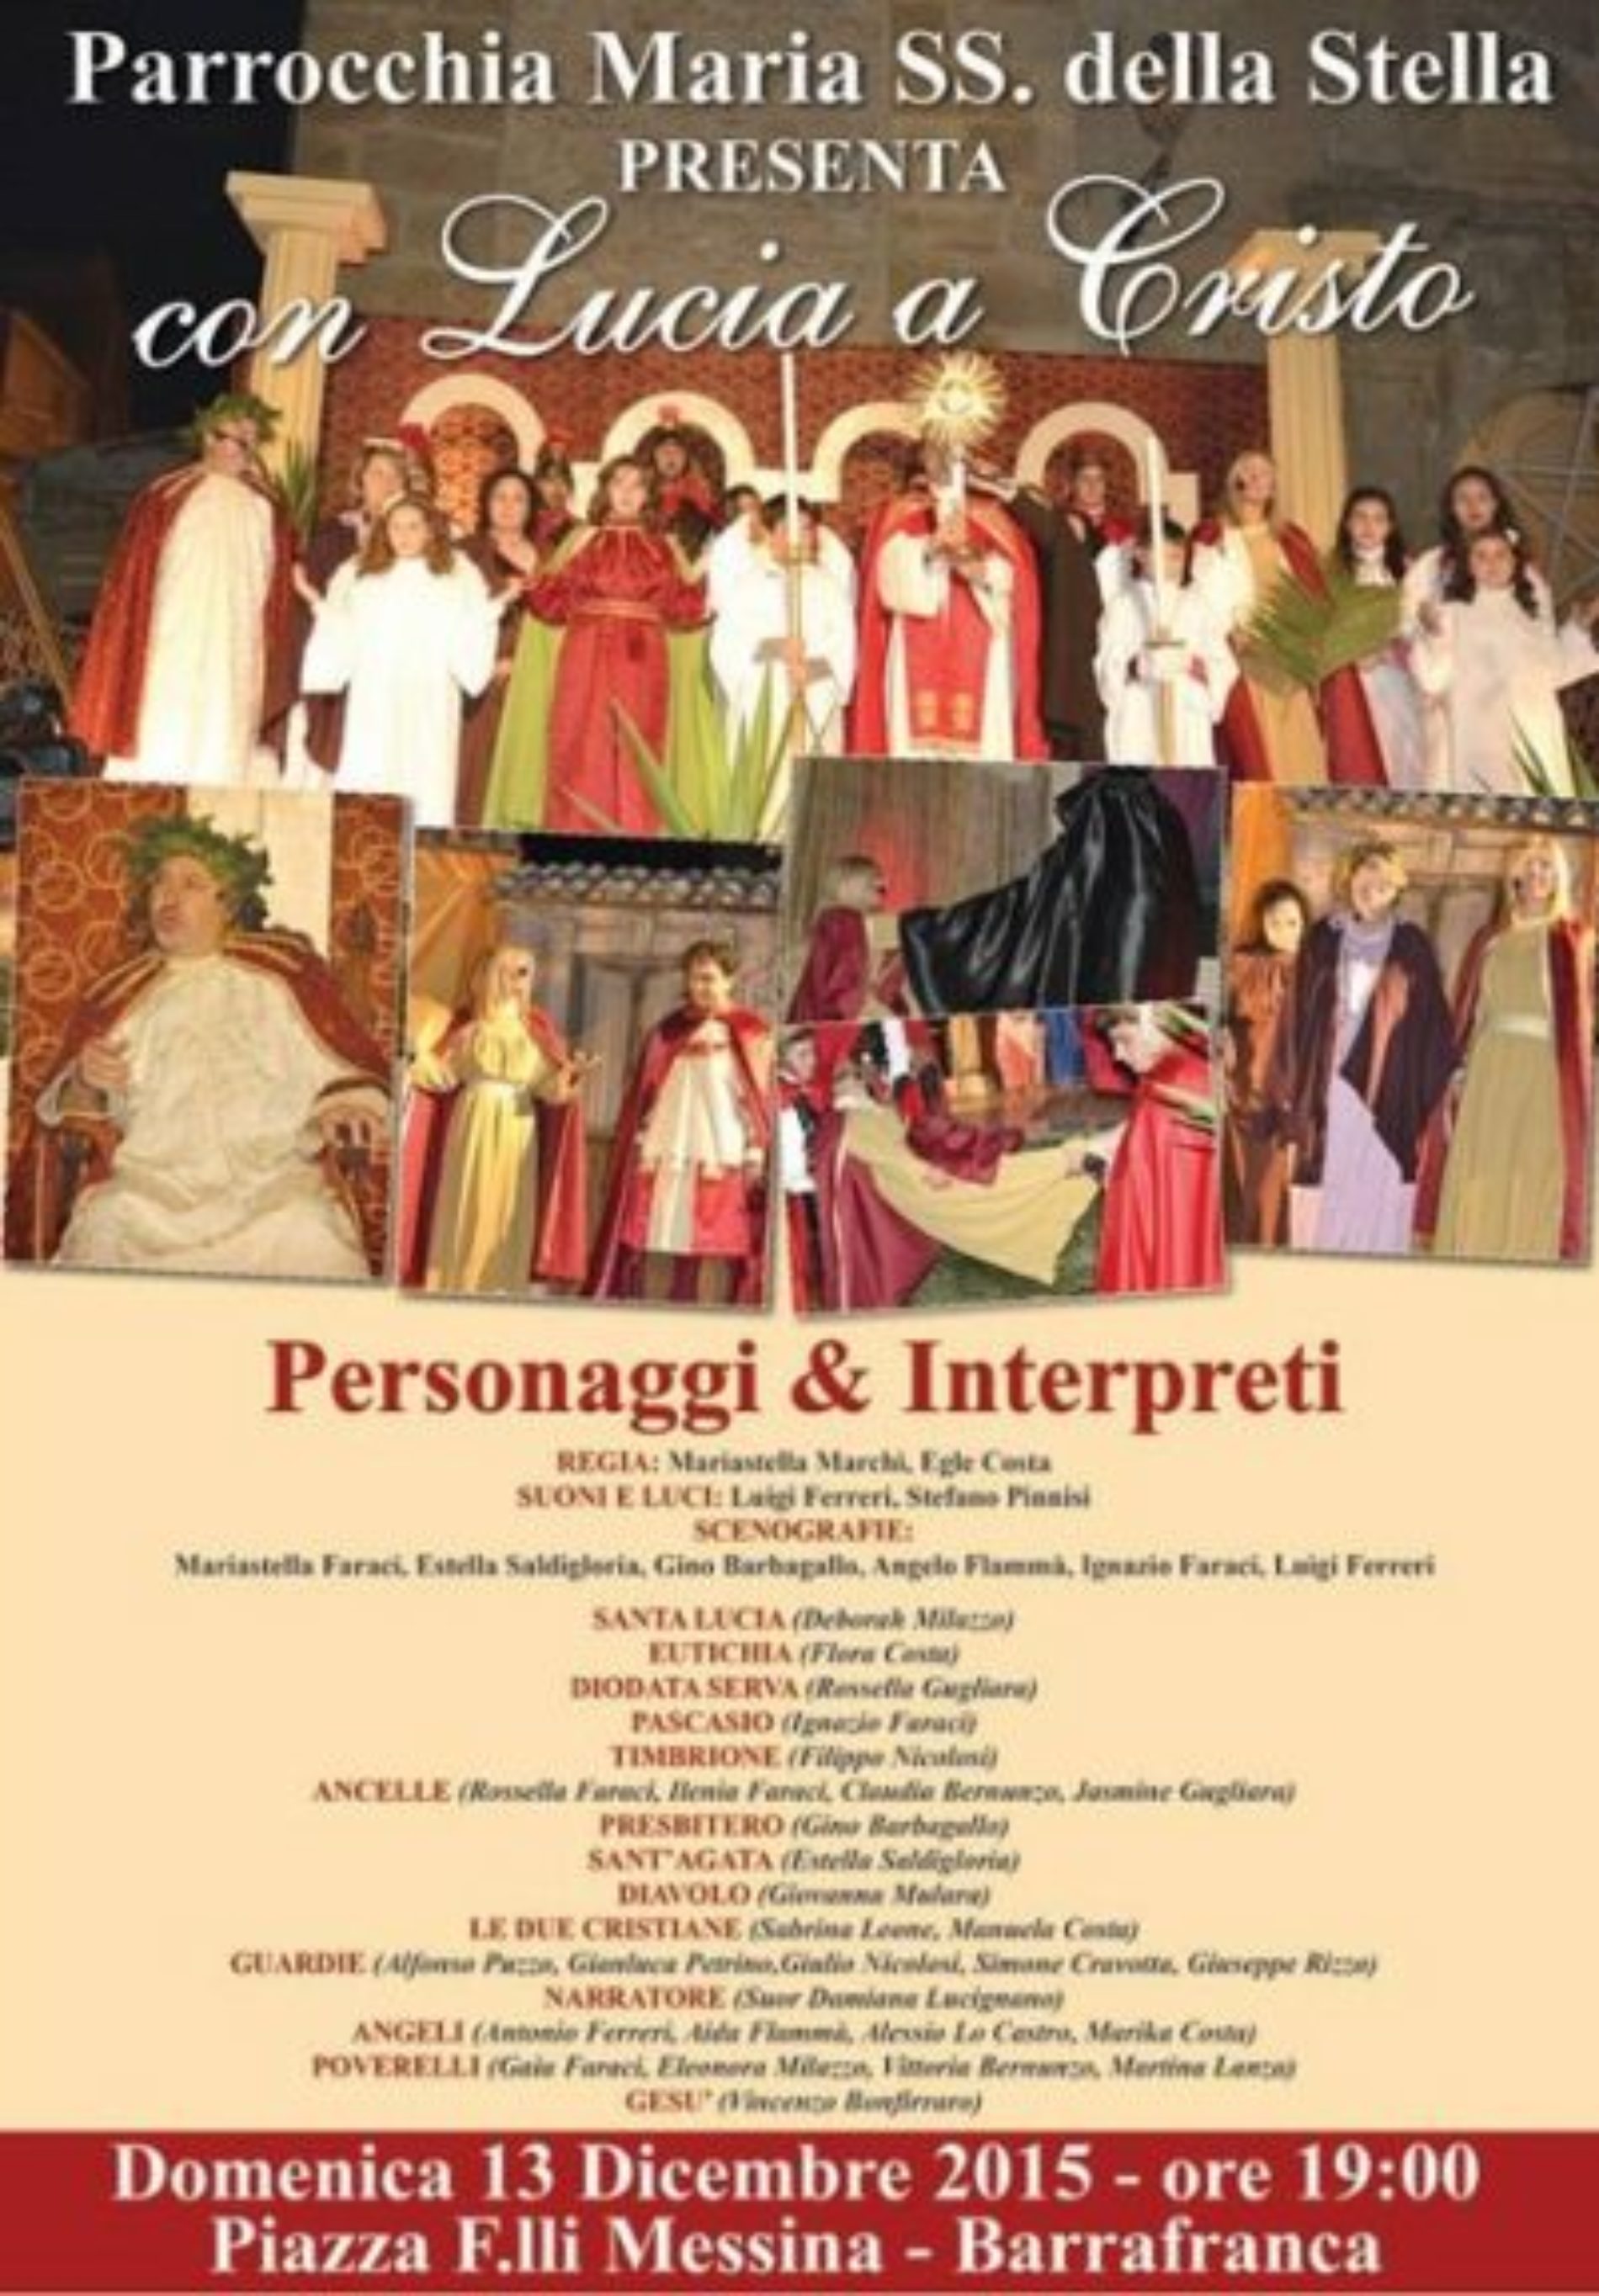 Recital “CON LUCIA A CRISTO” , organizzato dalla parrocchia Maria SS. della Stella